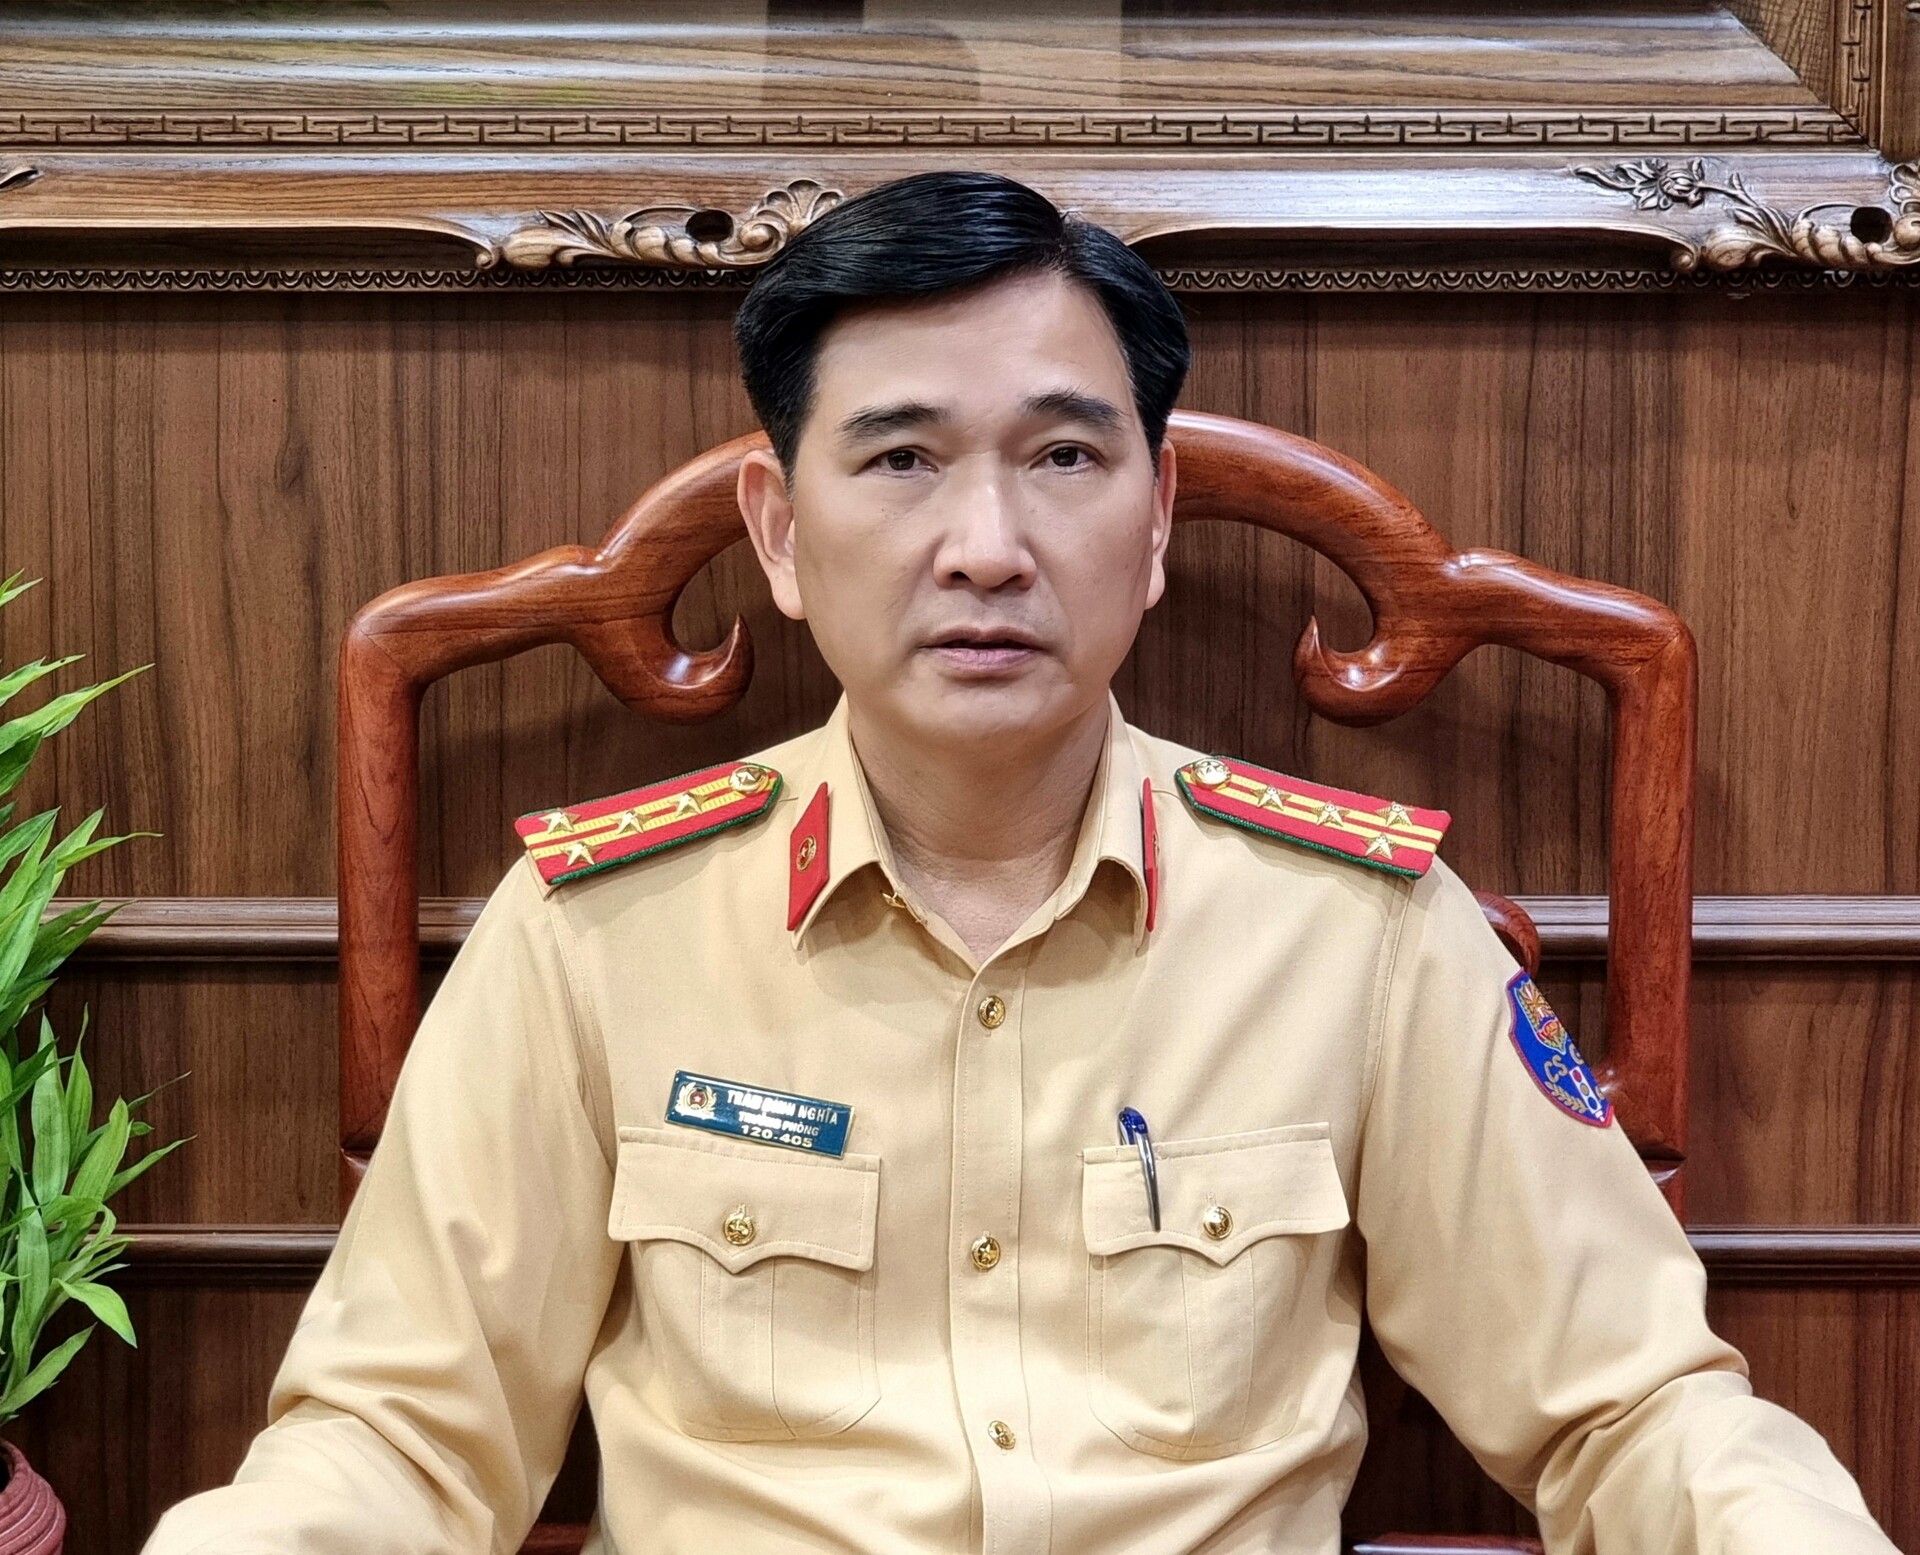 Đại tá Trần Đình Nghĩa, Trưởng phòng CSGT Công an Hà Nội